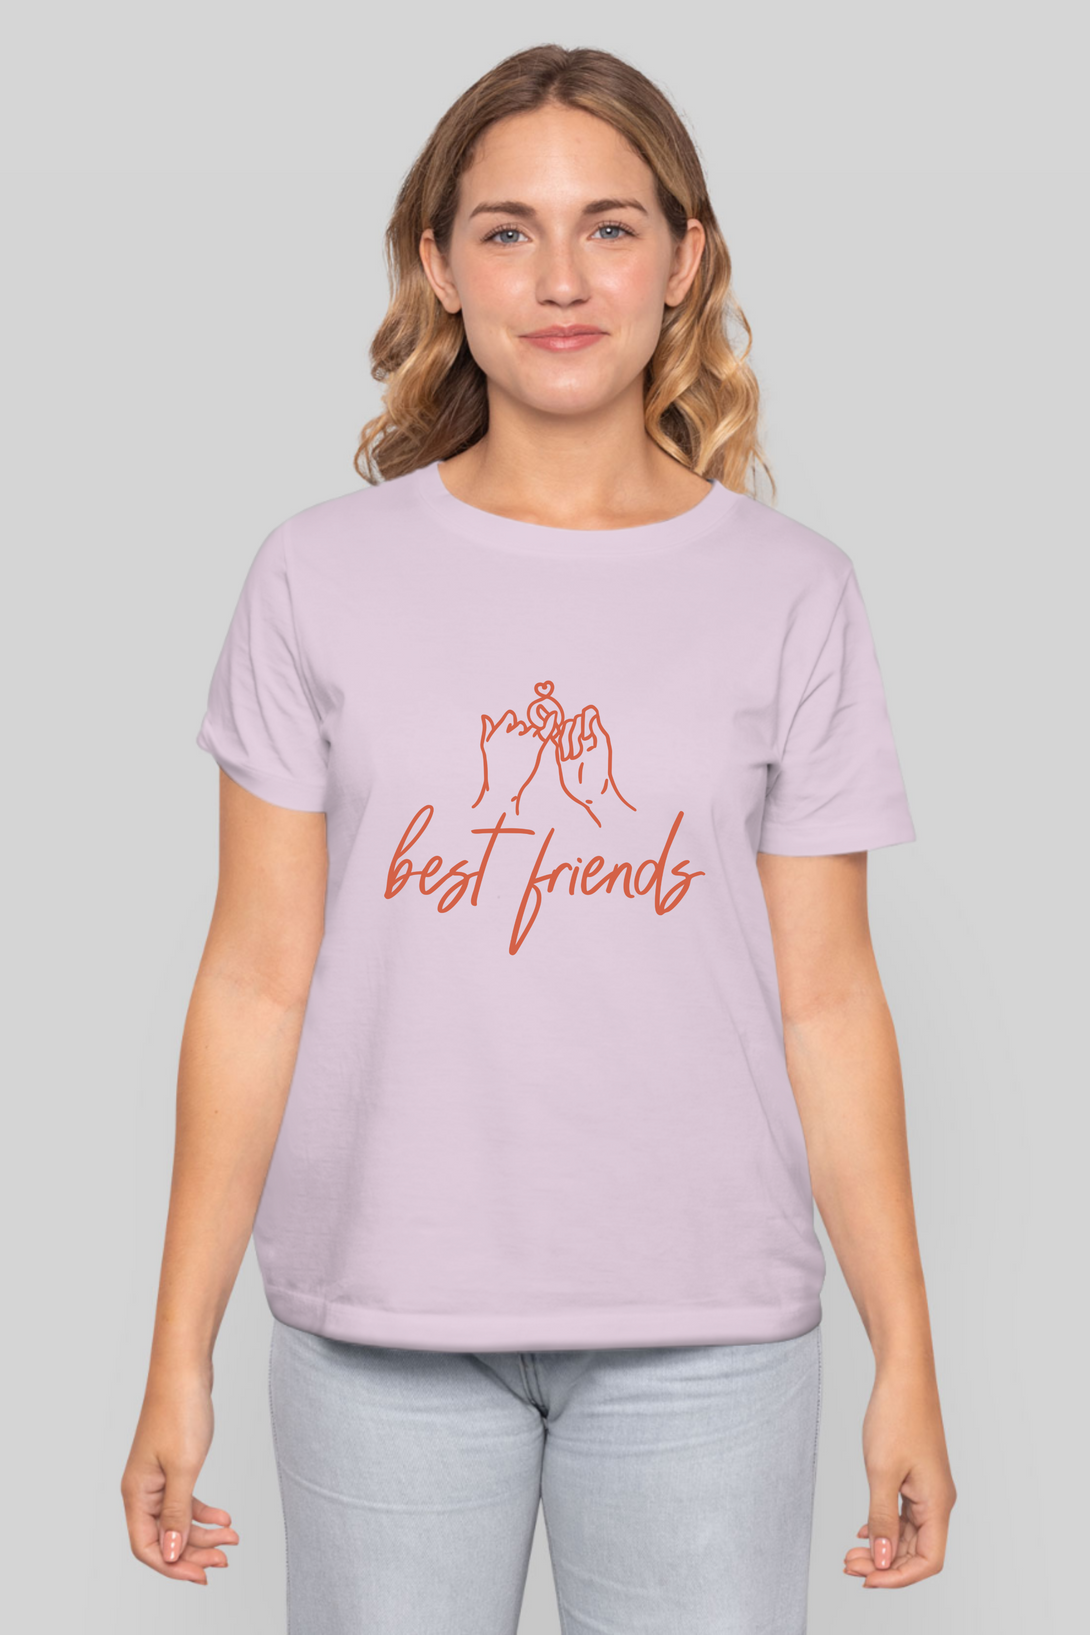 Best Friends Printed T-Shirt For Women - WowWaves - 9